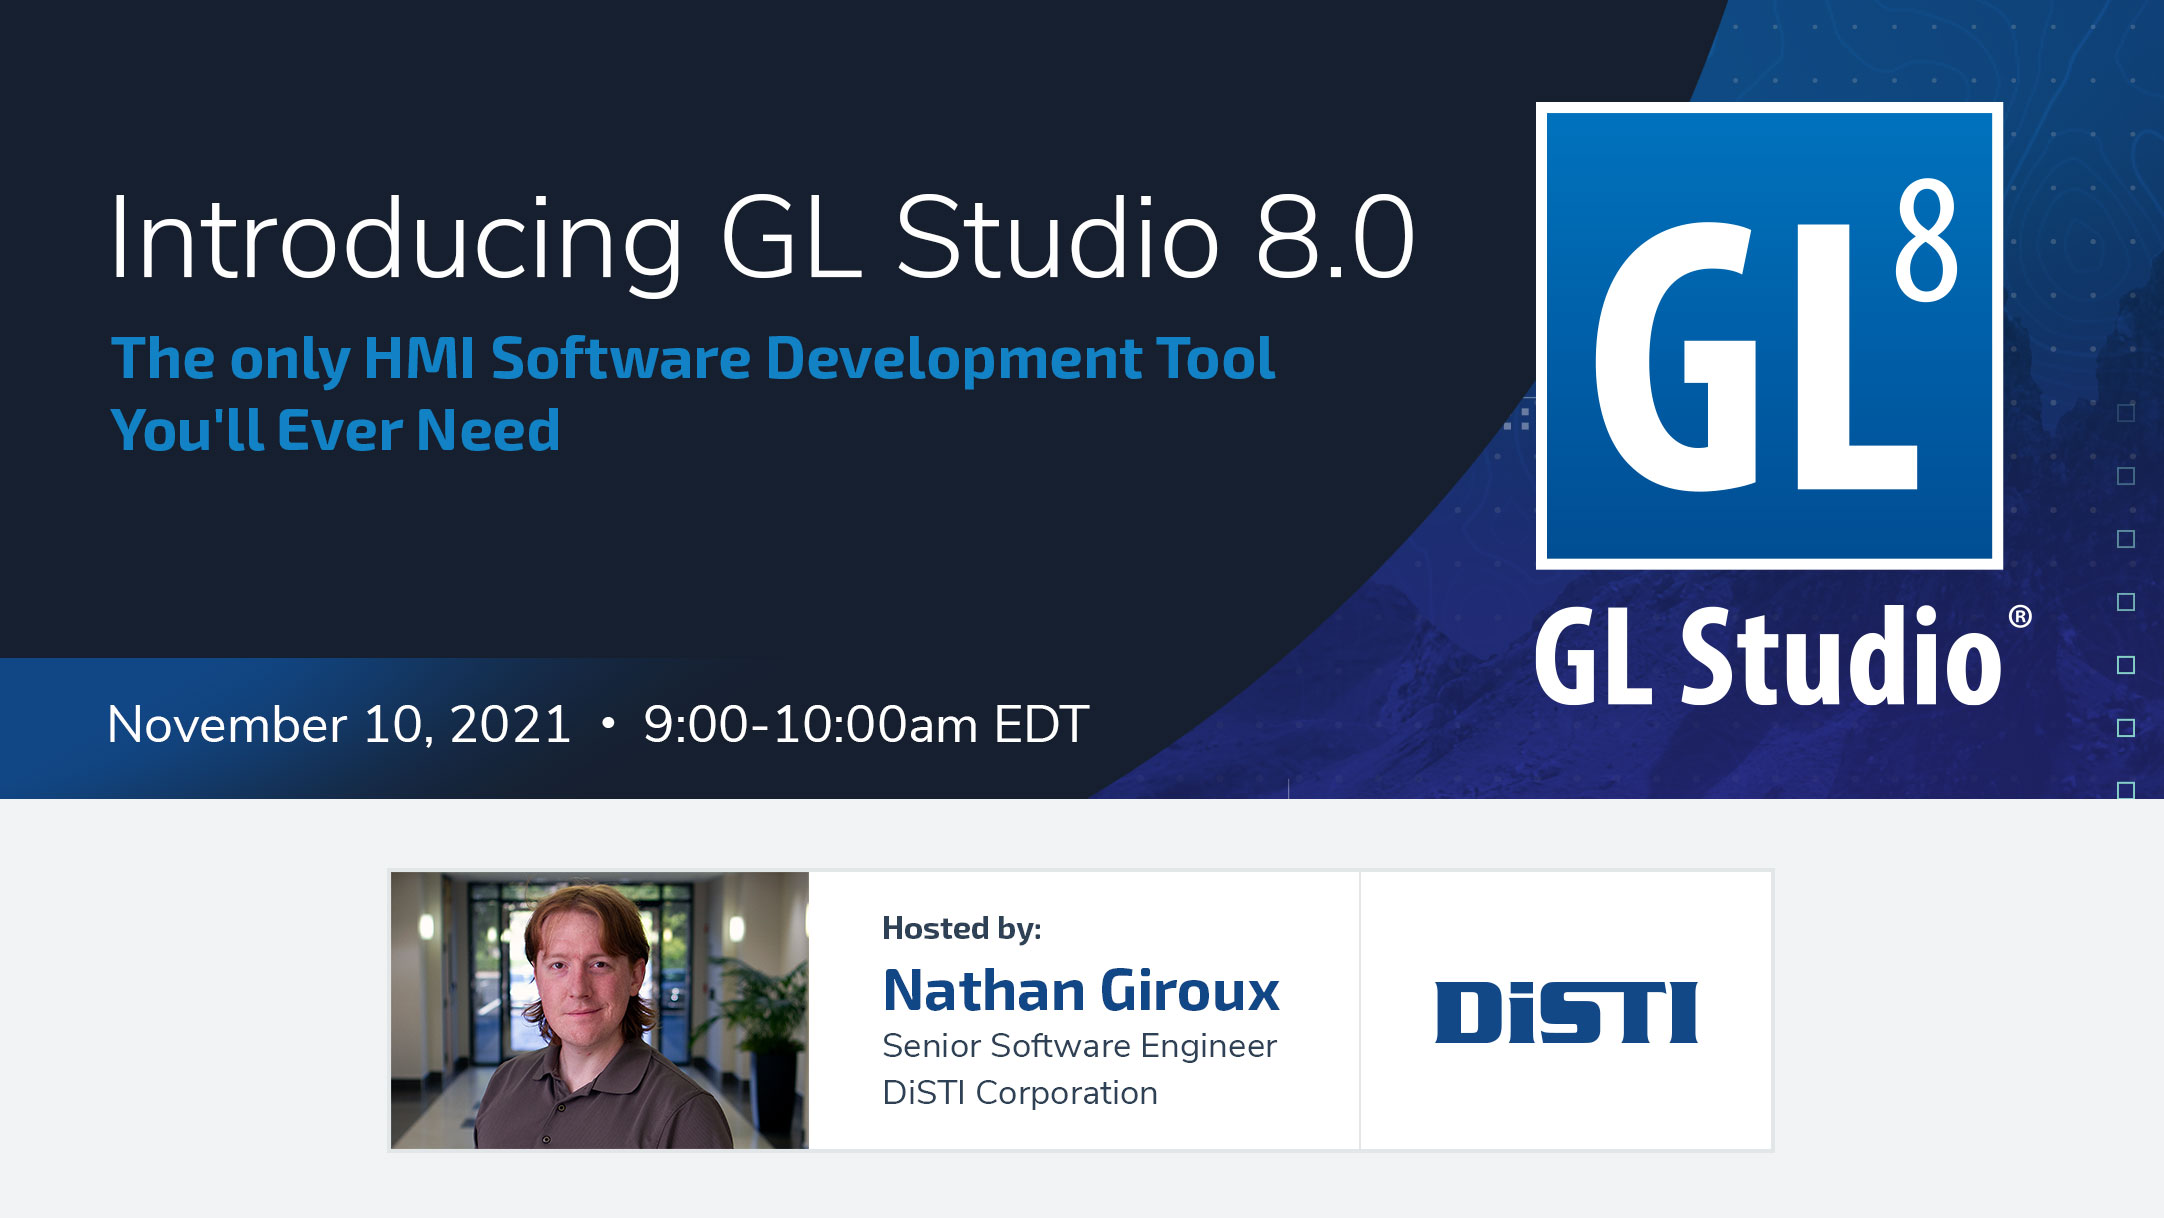 GL Studio 8.0